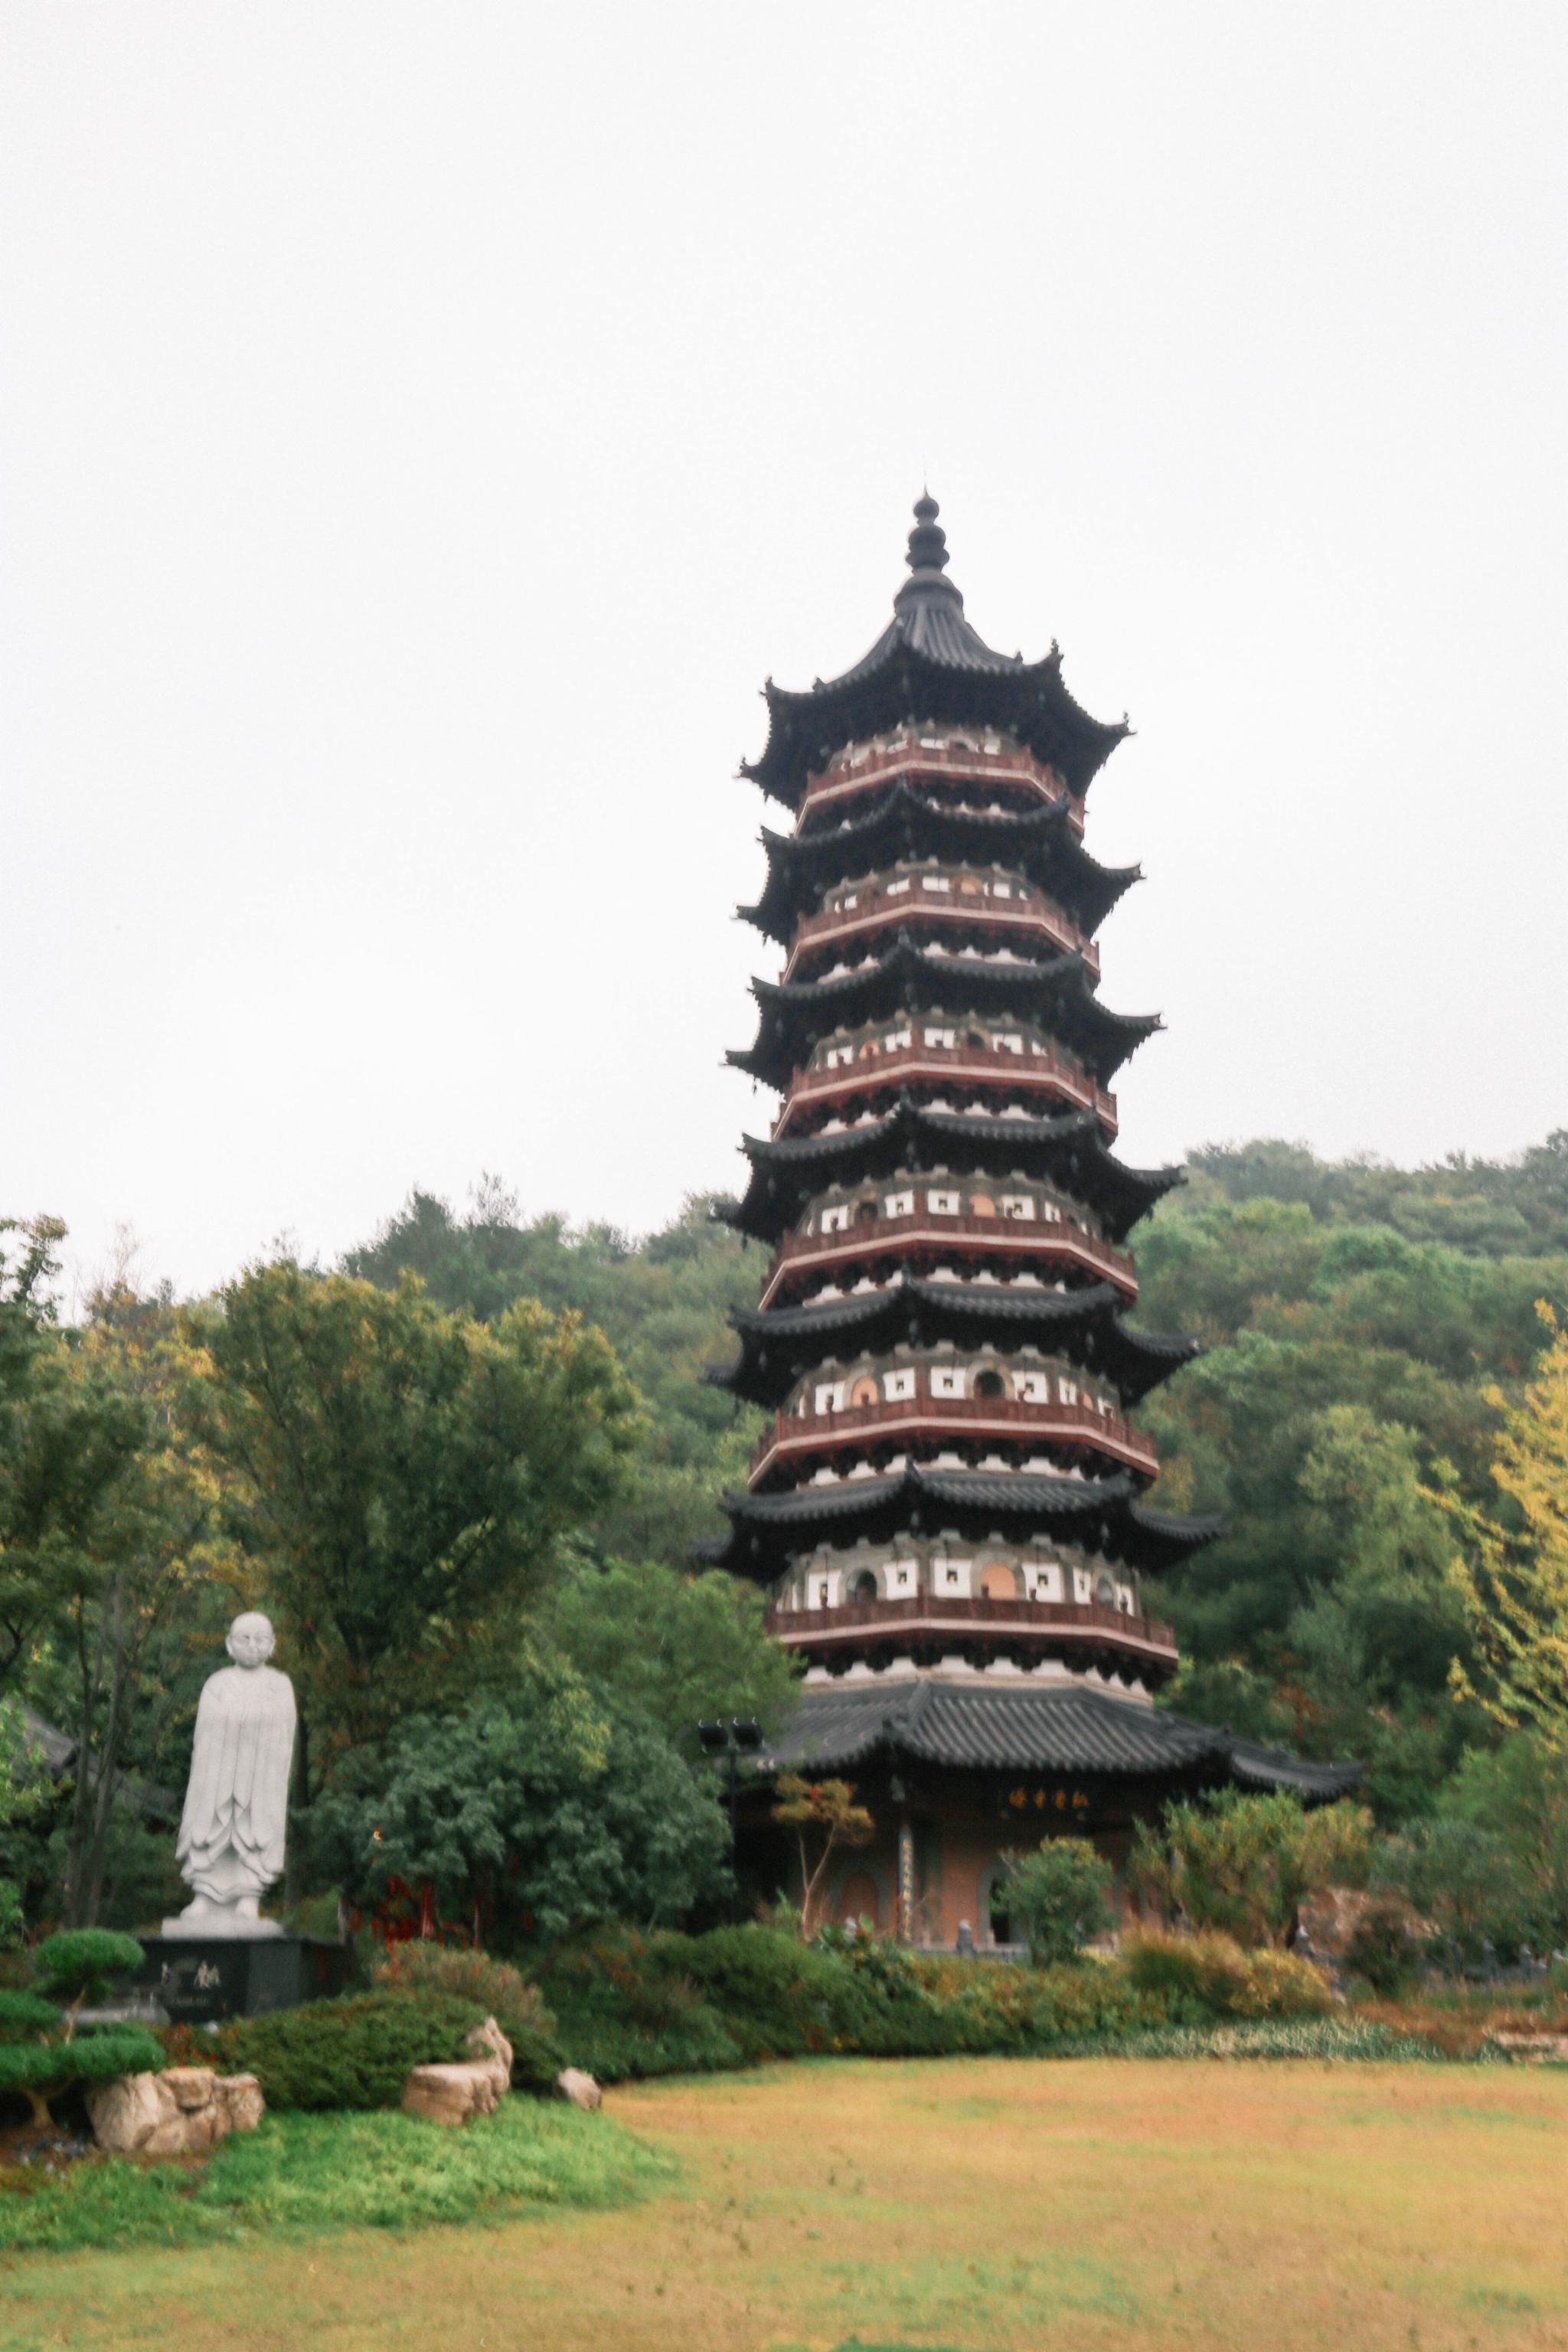 牛头禅文化园在宏觉寺遗址上建造弘觉寺塔塔高45米七级八面是南京地区